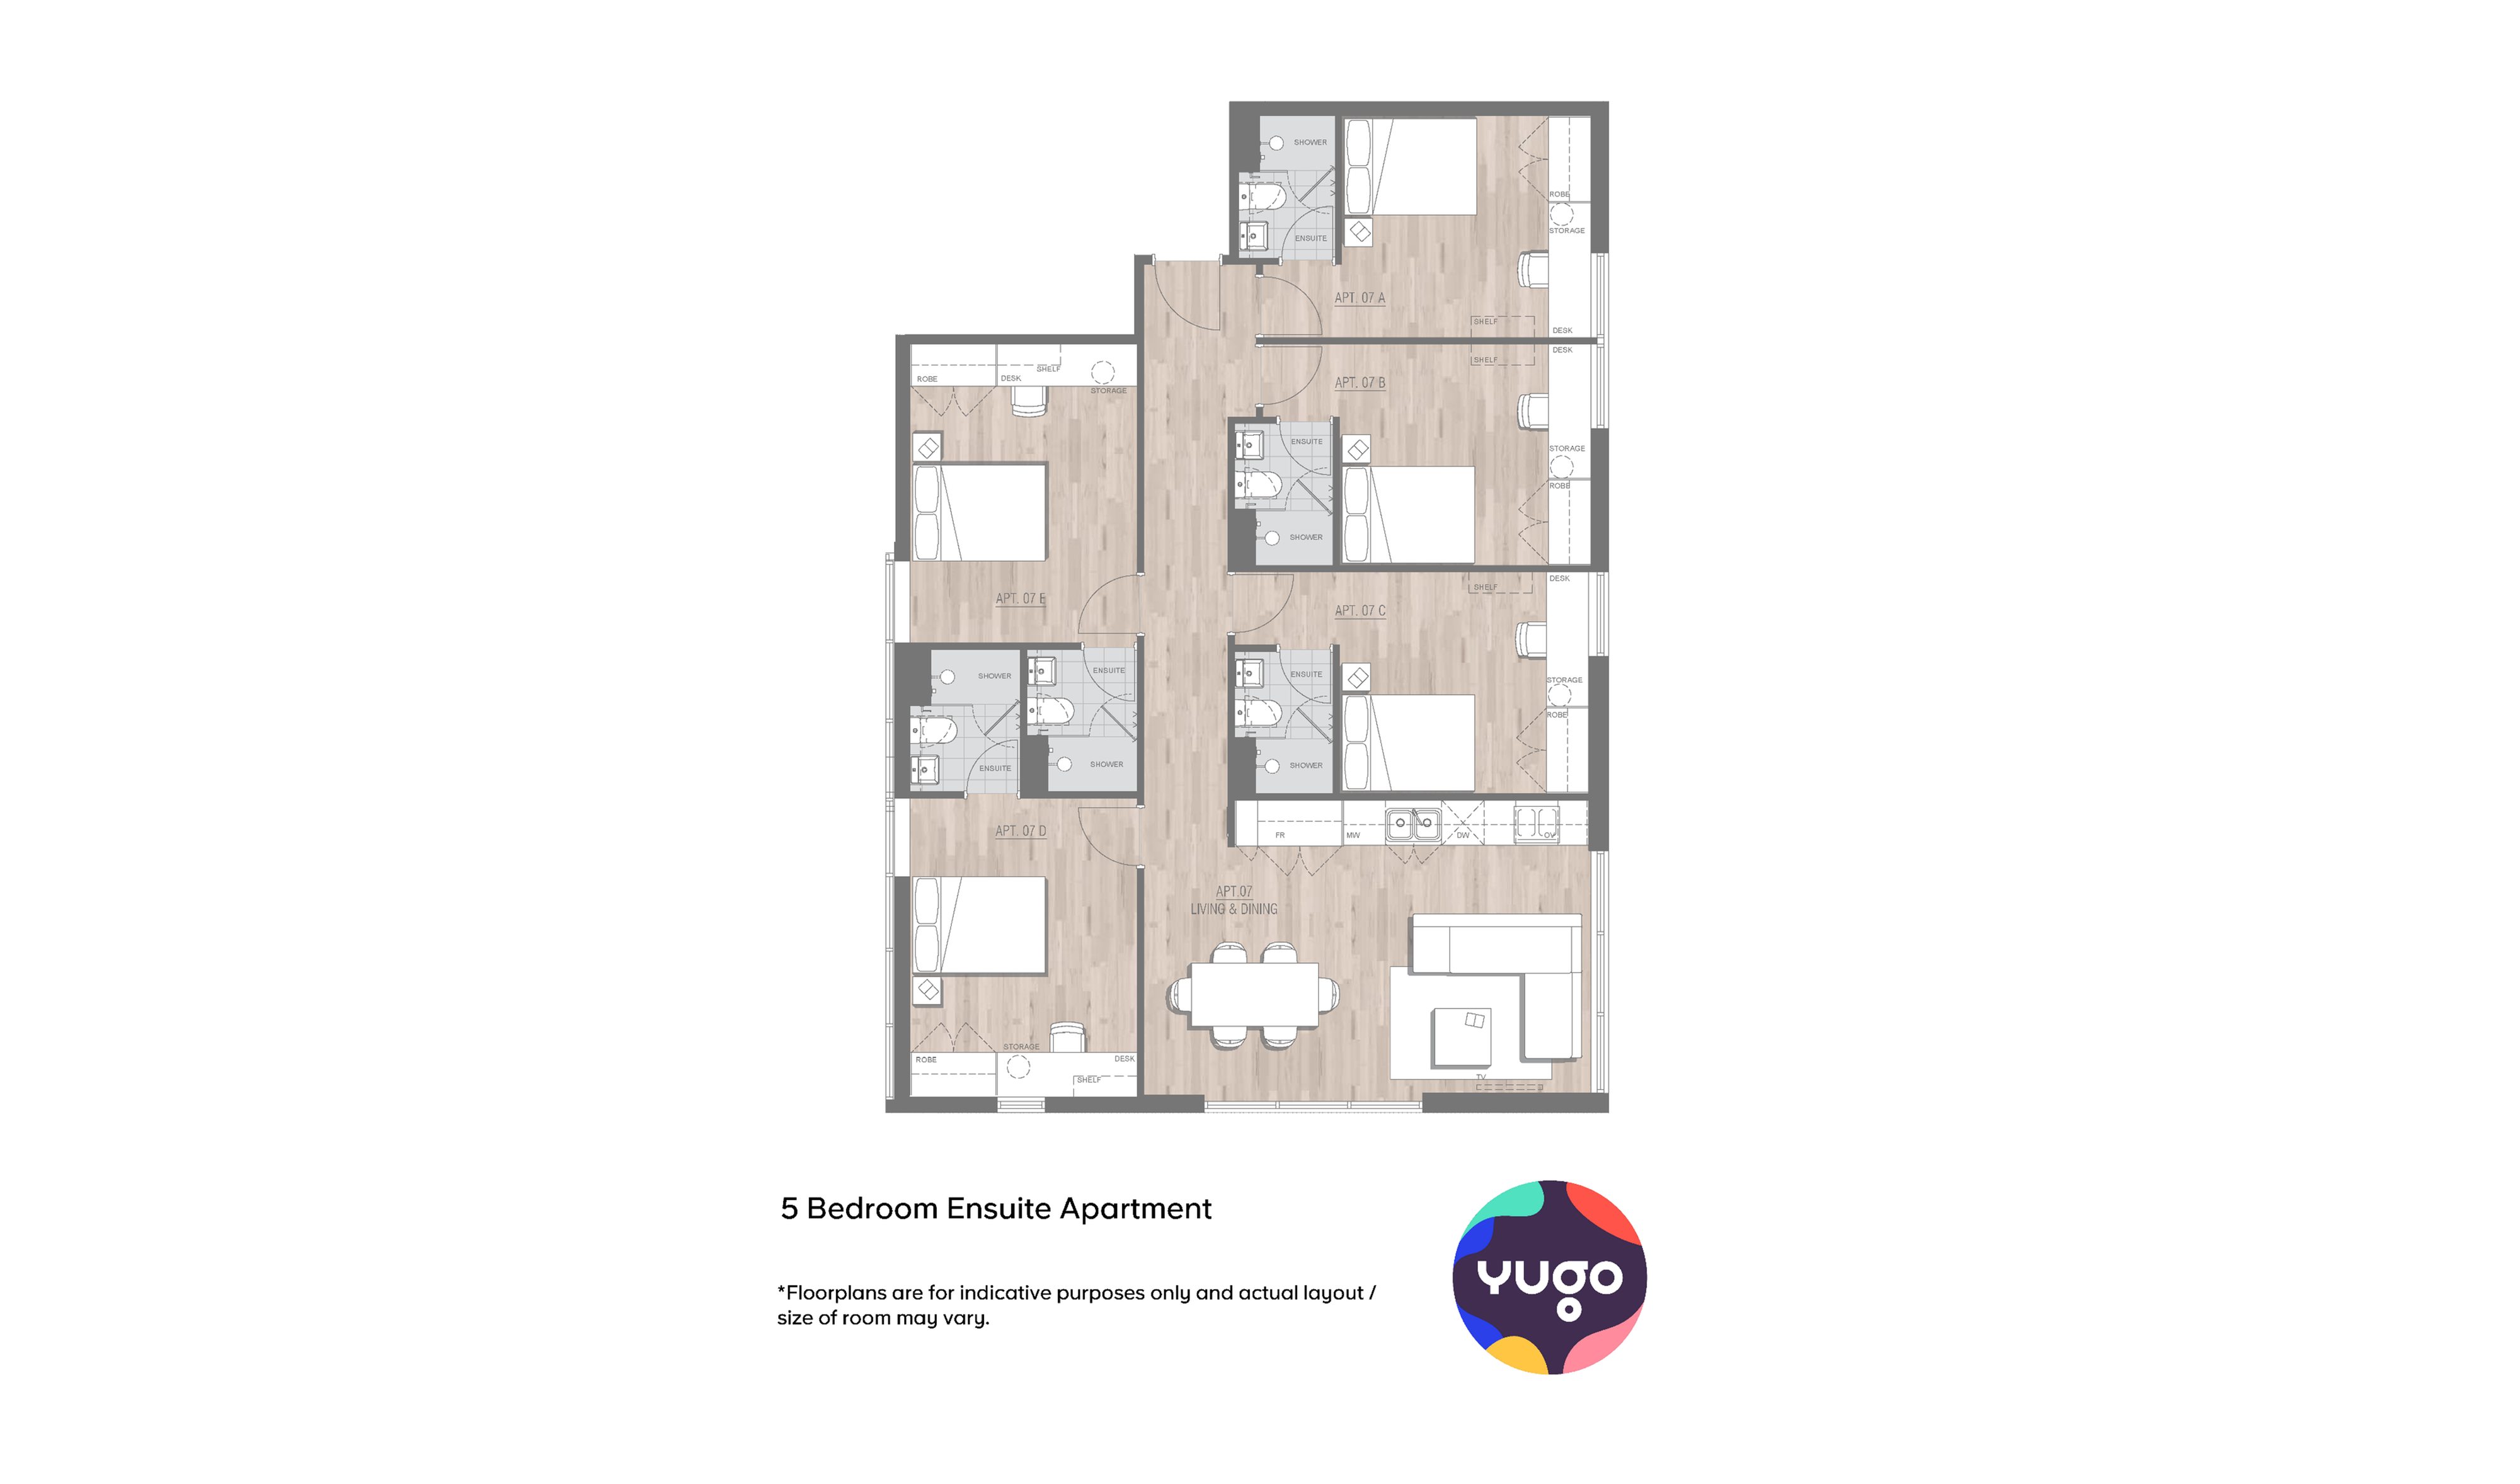 Apartamento de 5 habitaciones con baño (1)